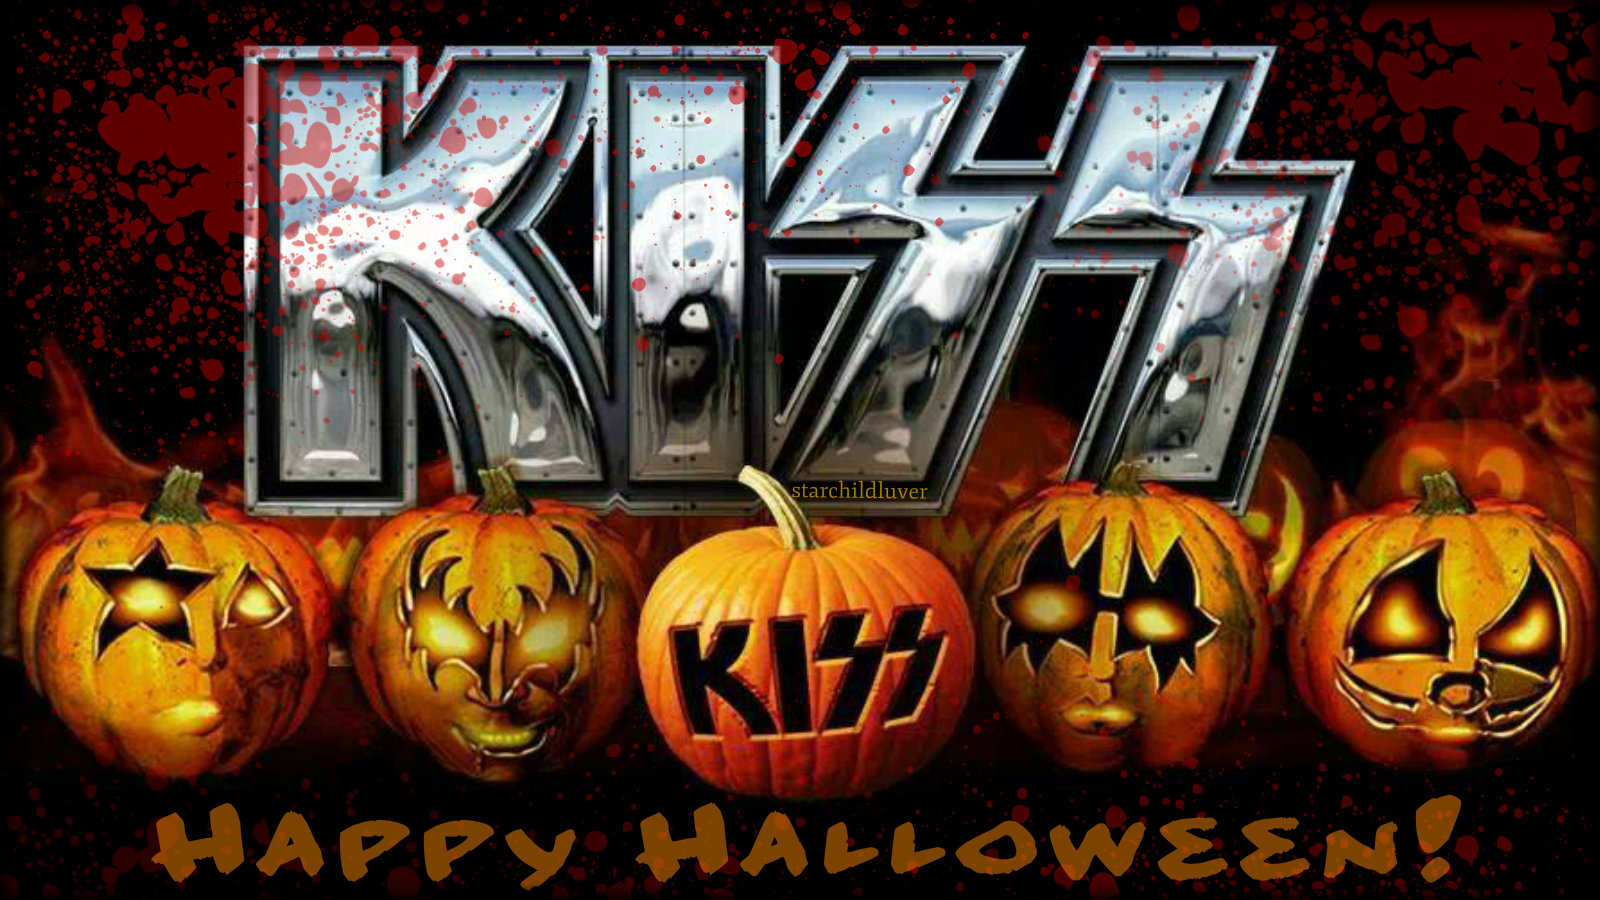 Happy Halloween - KISS Wallpaper (38984990) - Fanpop